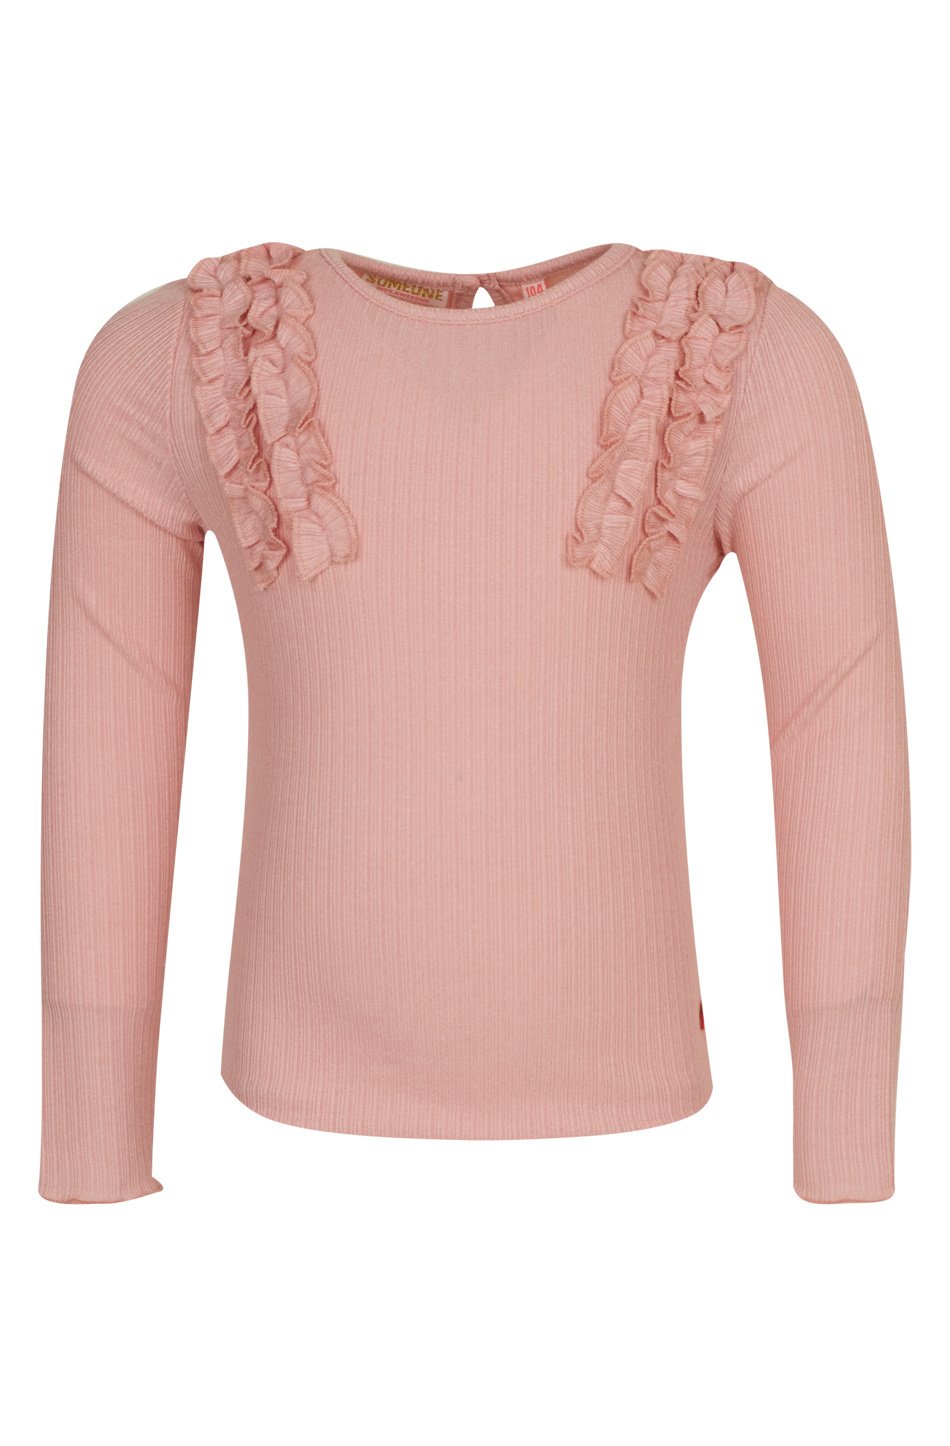 Meisjes shirt - Michelle-SG-03-G - Licht roze